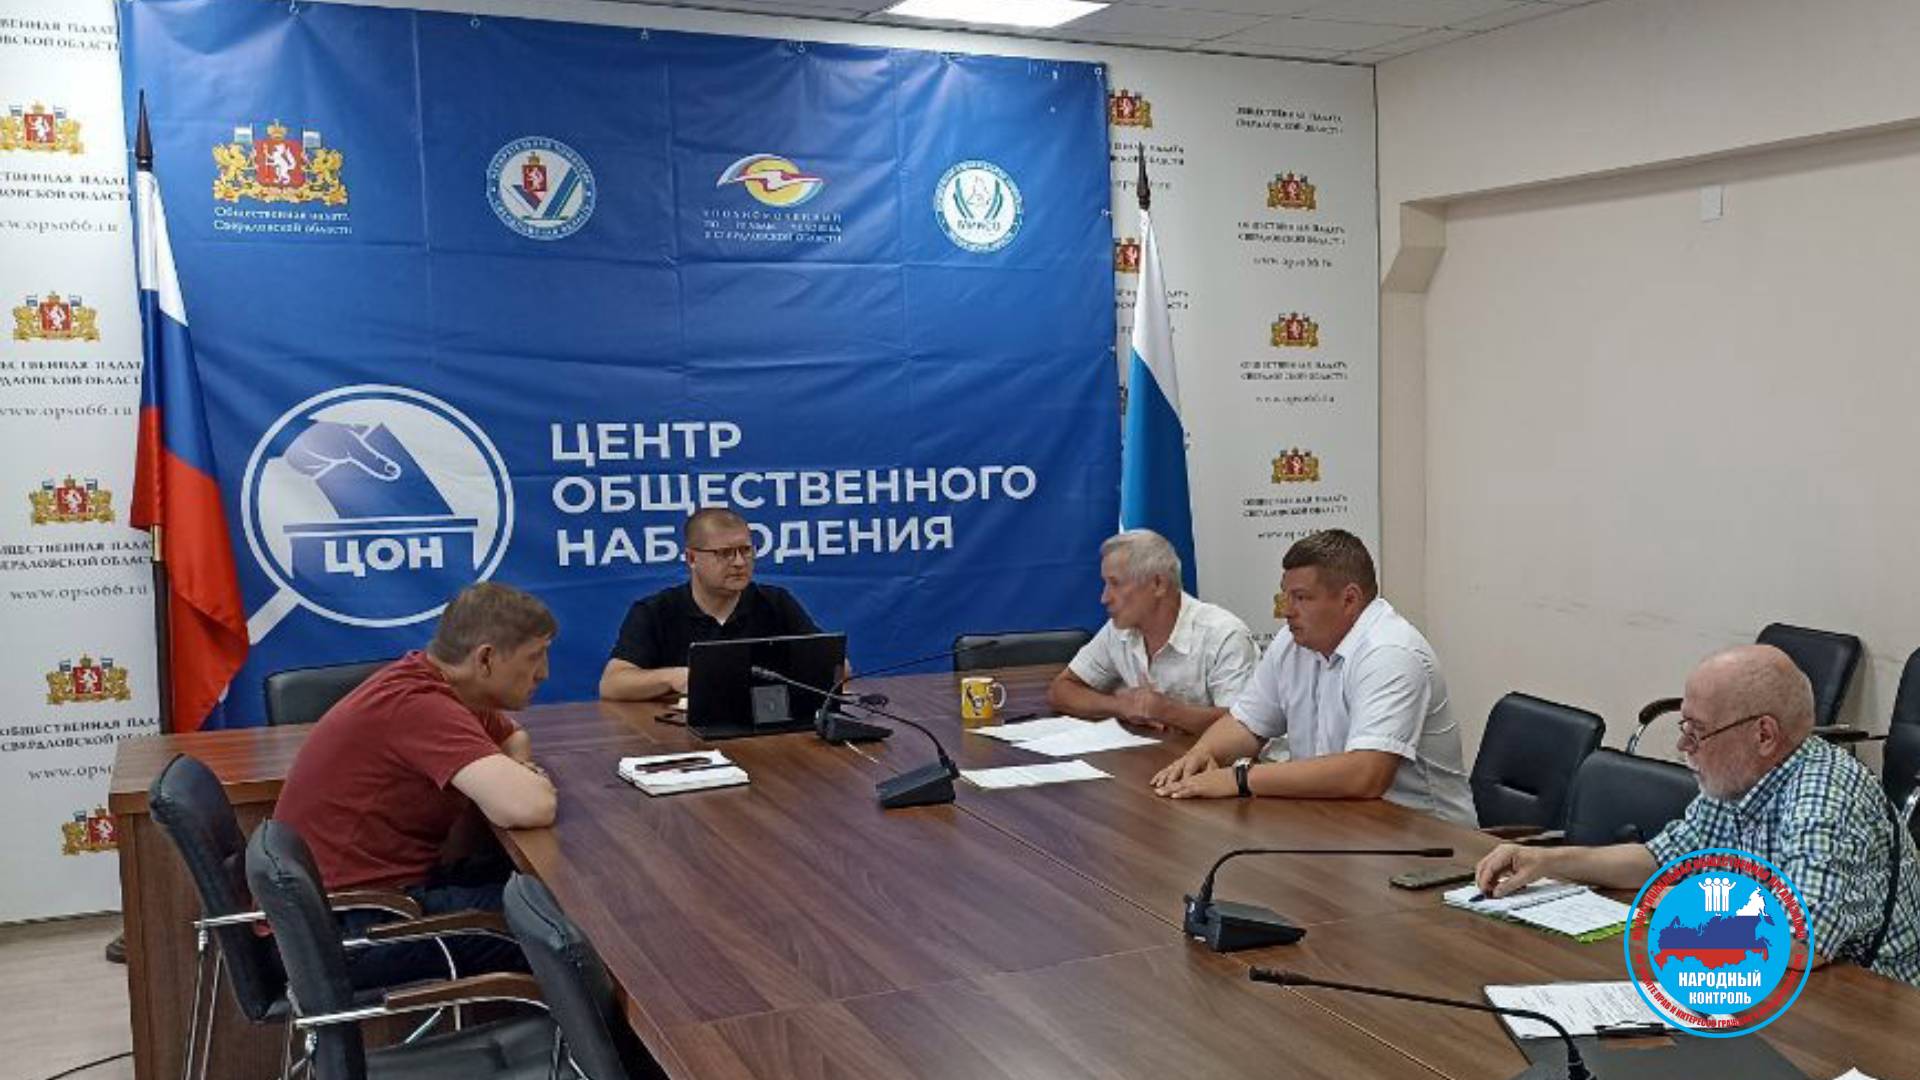 Итоги работы общественной наблюдательной комиссии 6-го созыва Свердловской области